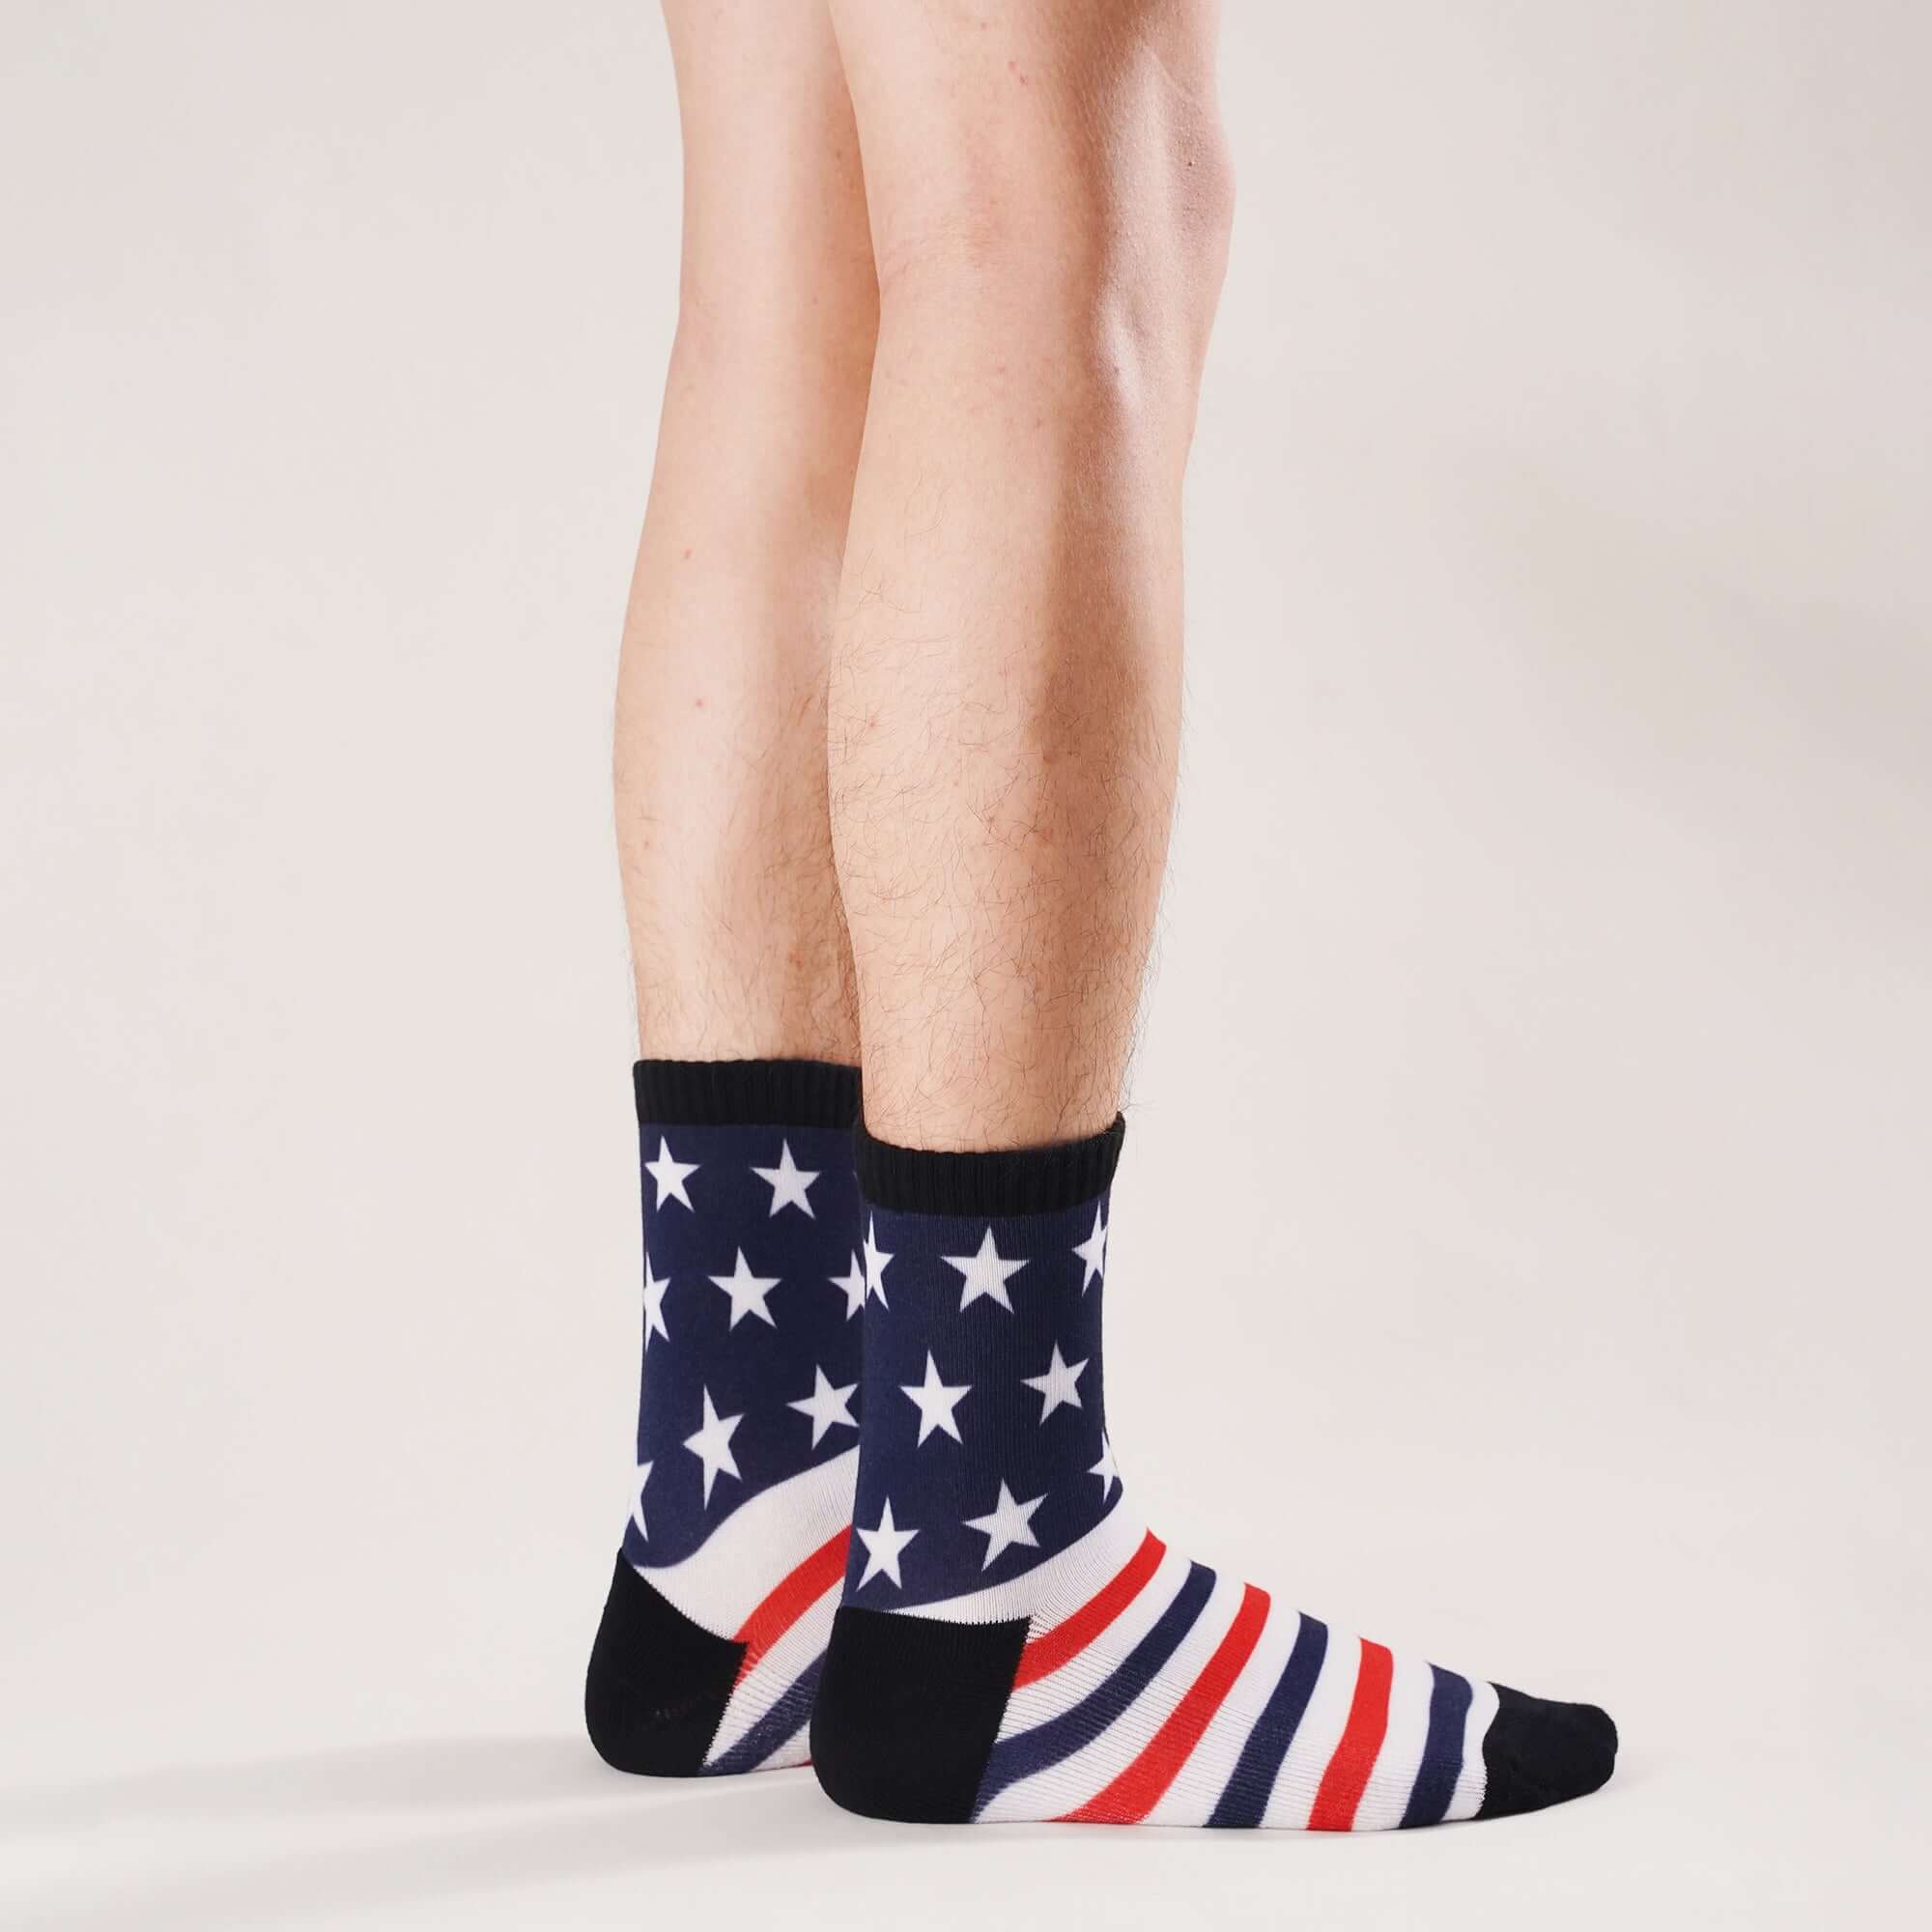 USA American Flag Socks Patriotic Crew Socks for Men/Women Striped Stars Socks Gift, 4 Pack - md-diab